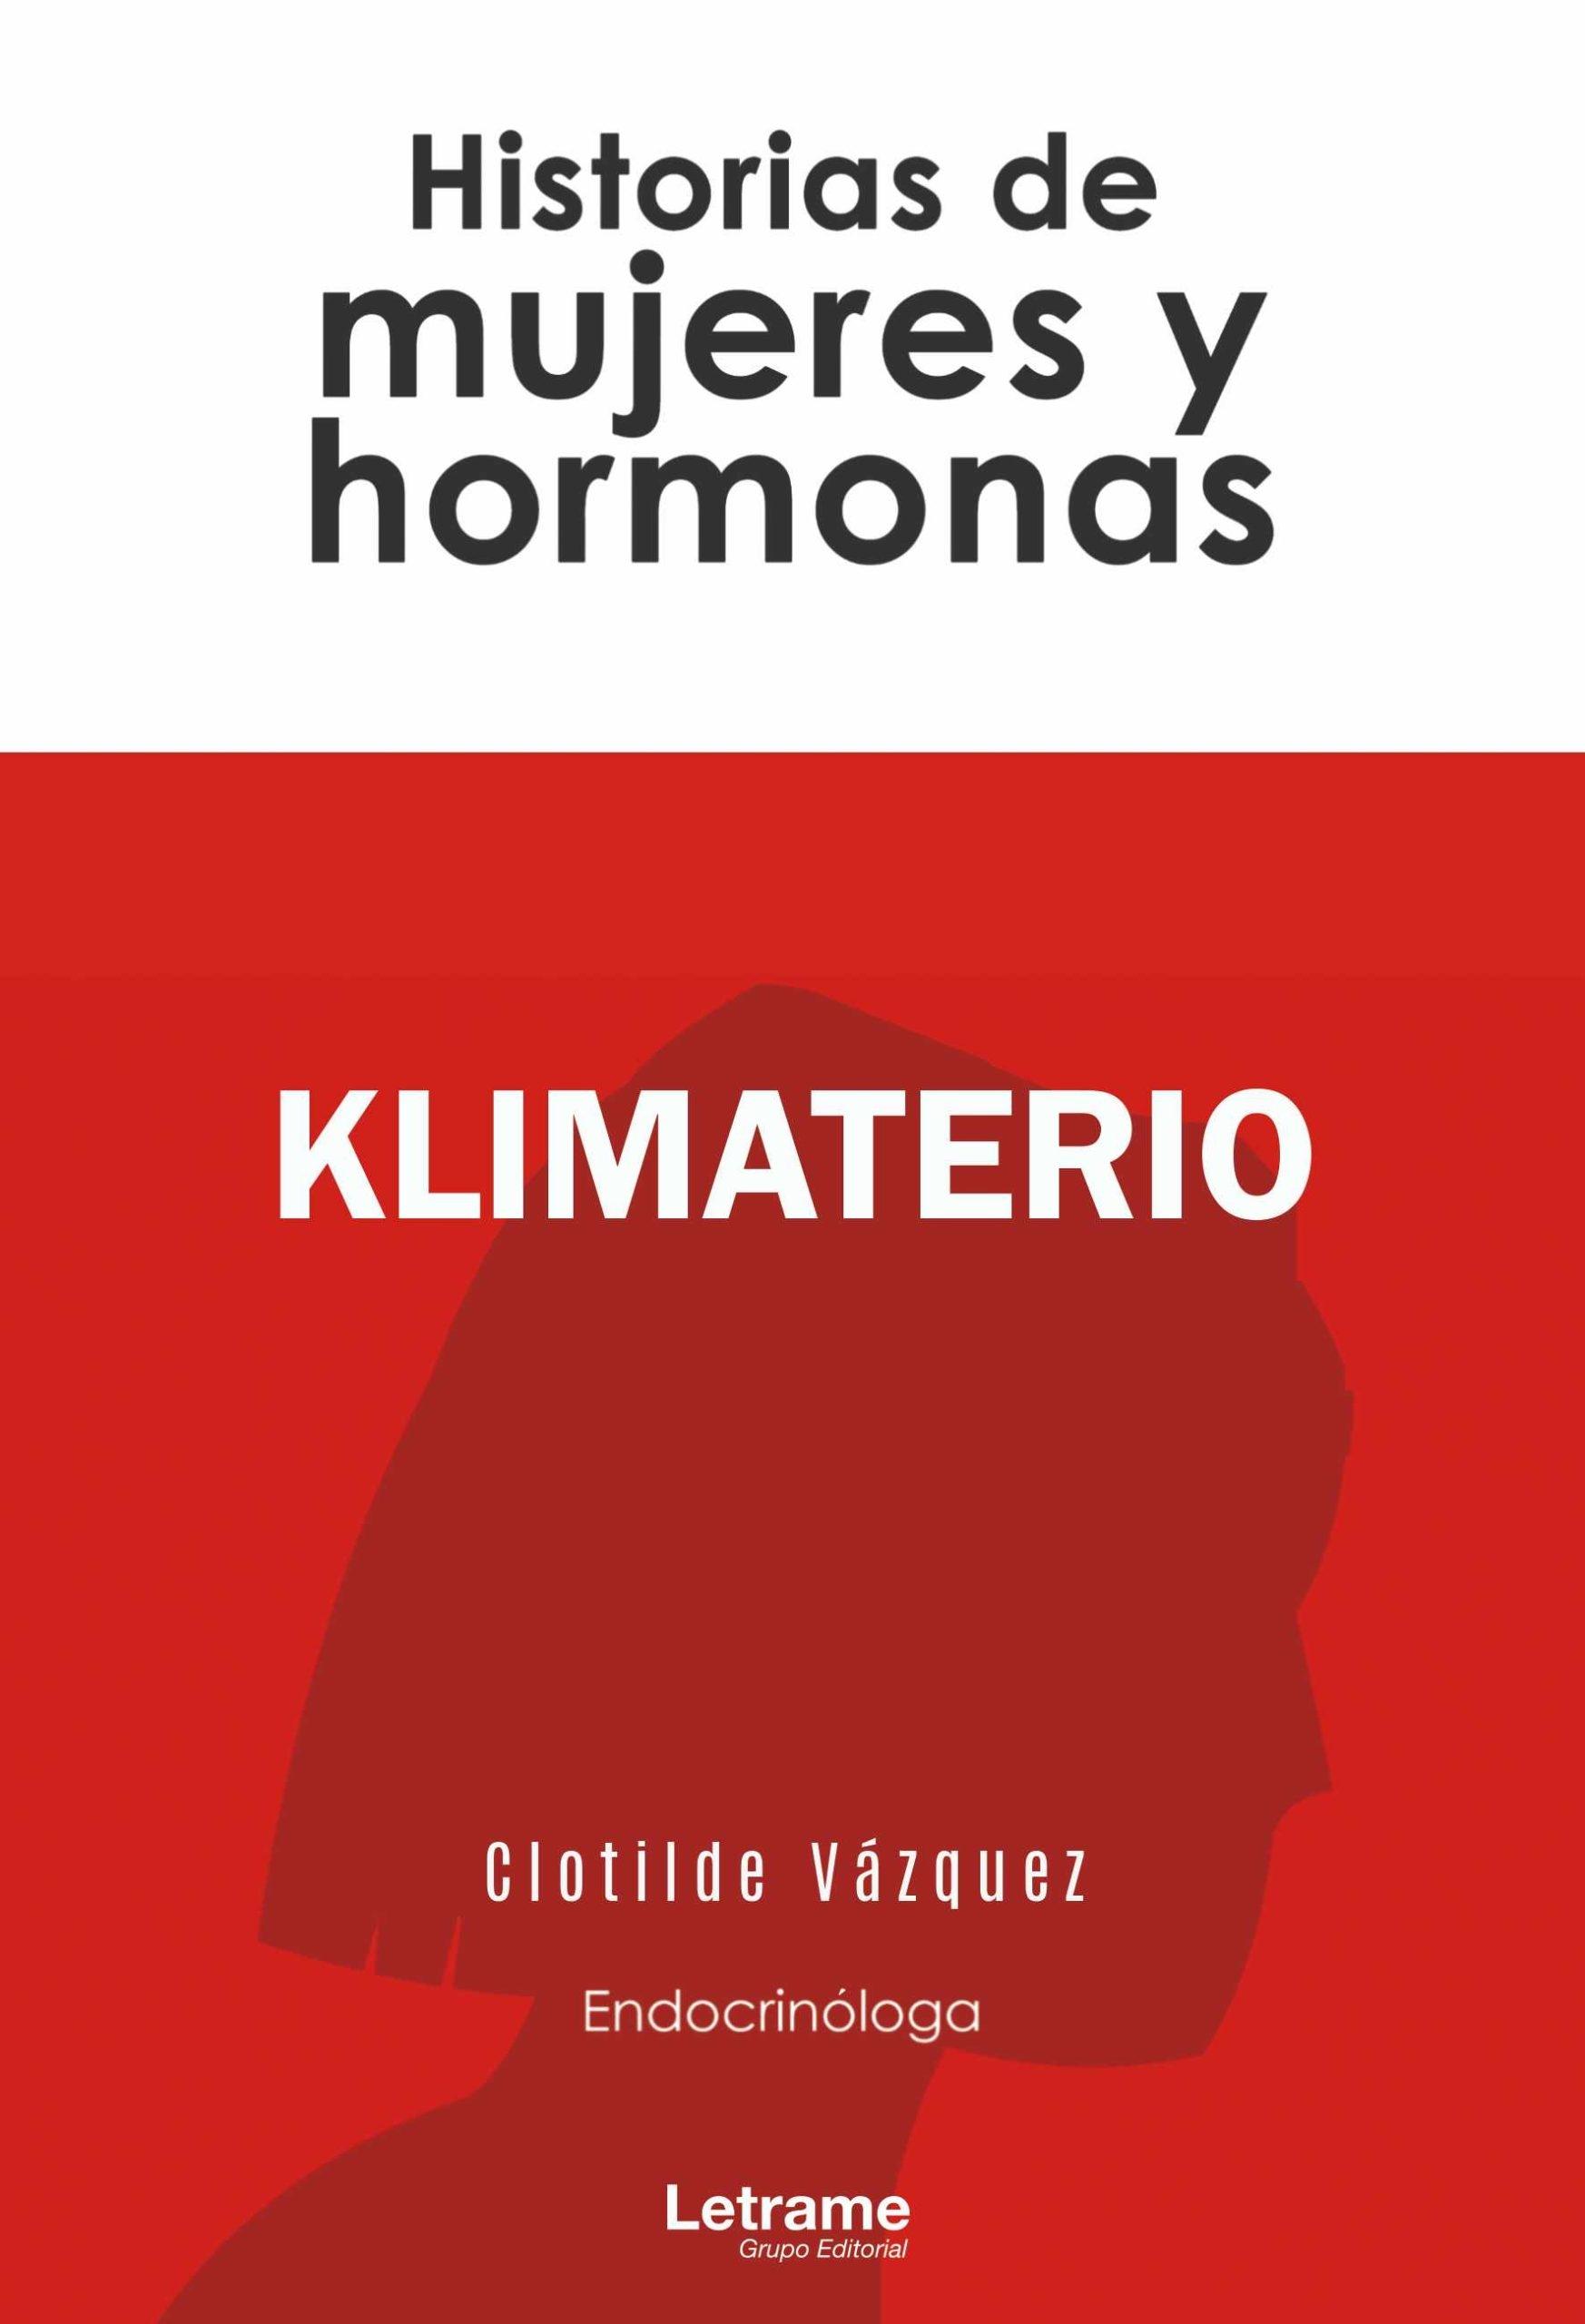 Klimaterio "Historias de mujeres y hormonas"